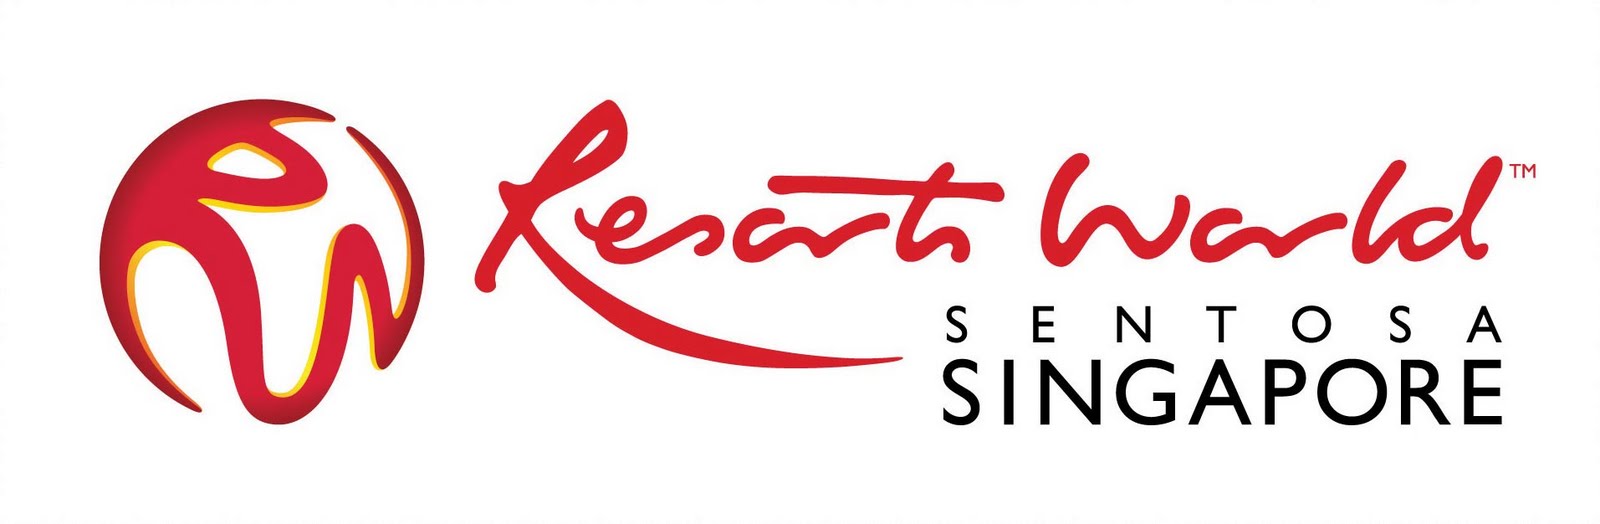 genting-singapores-revenue